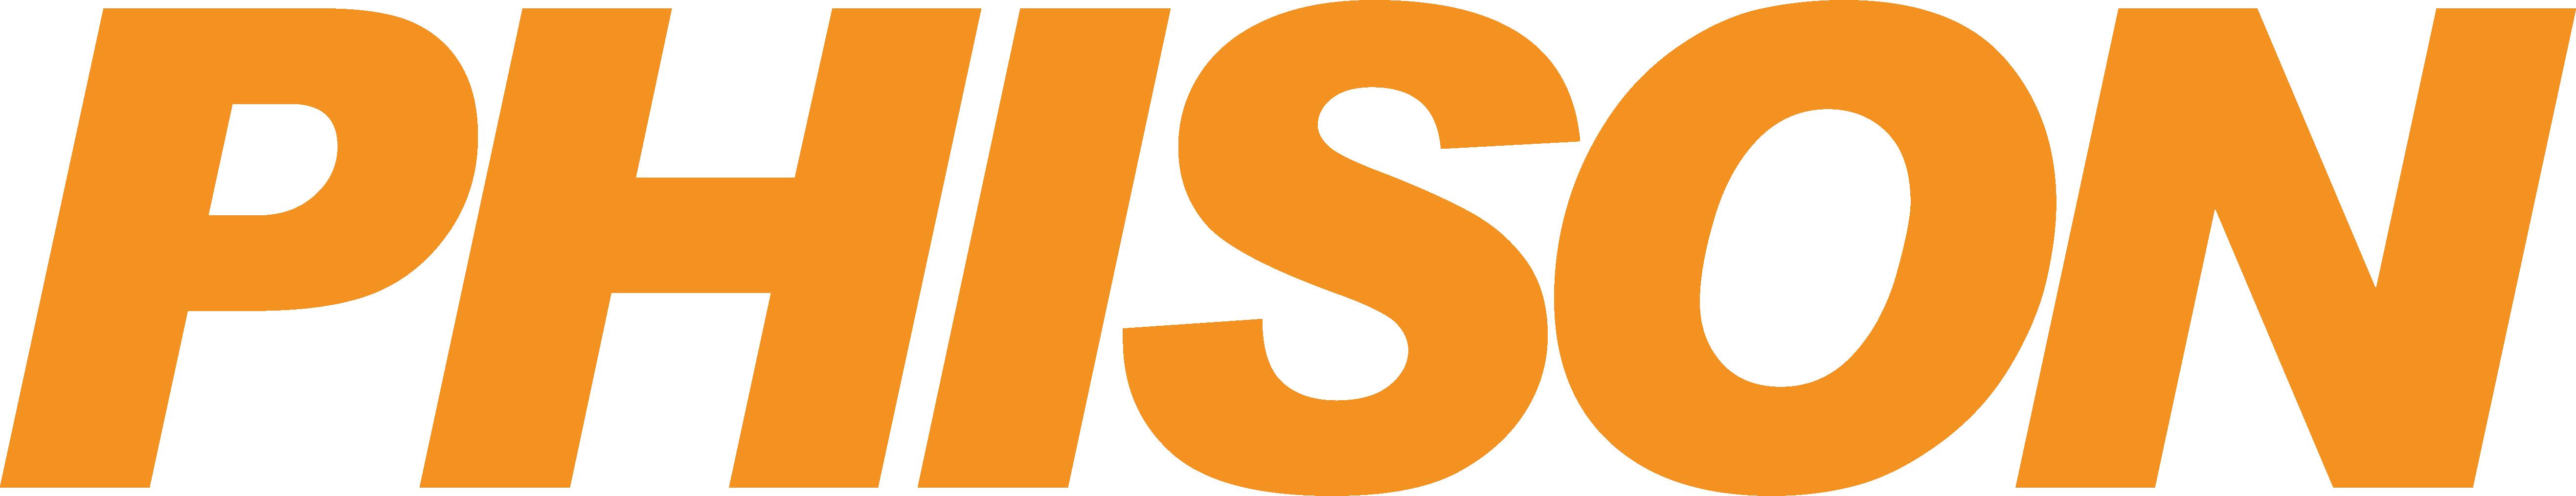 Phison-logo.png.jpg